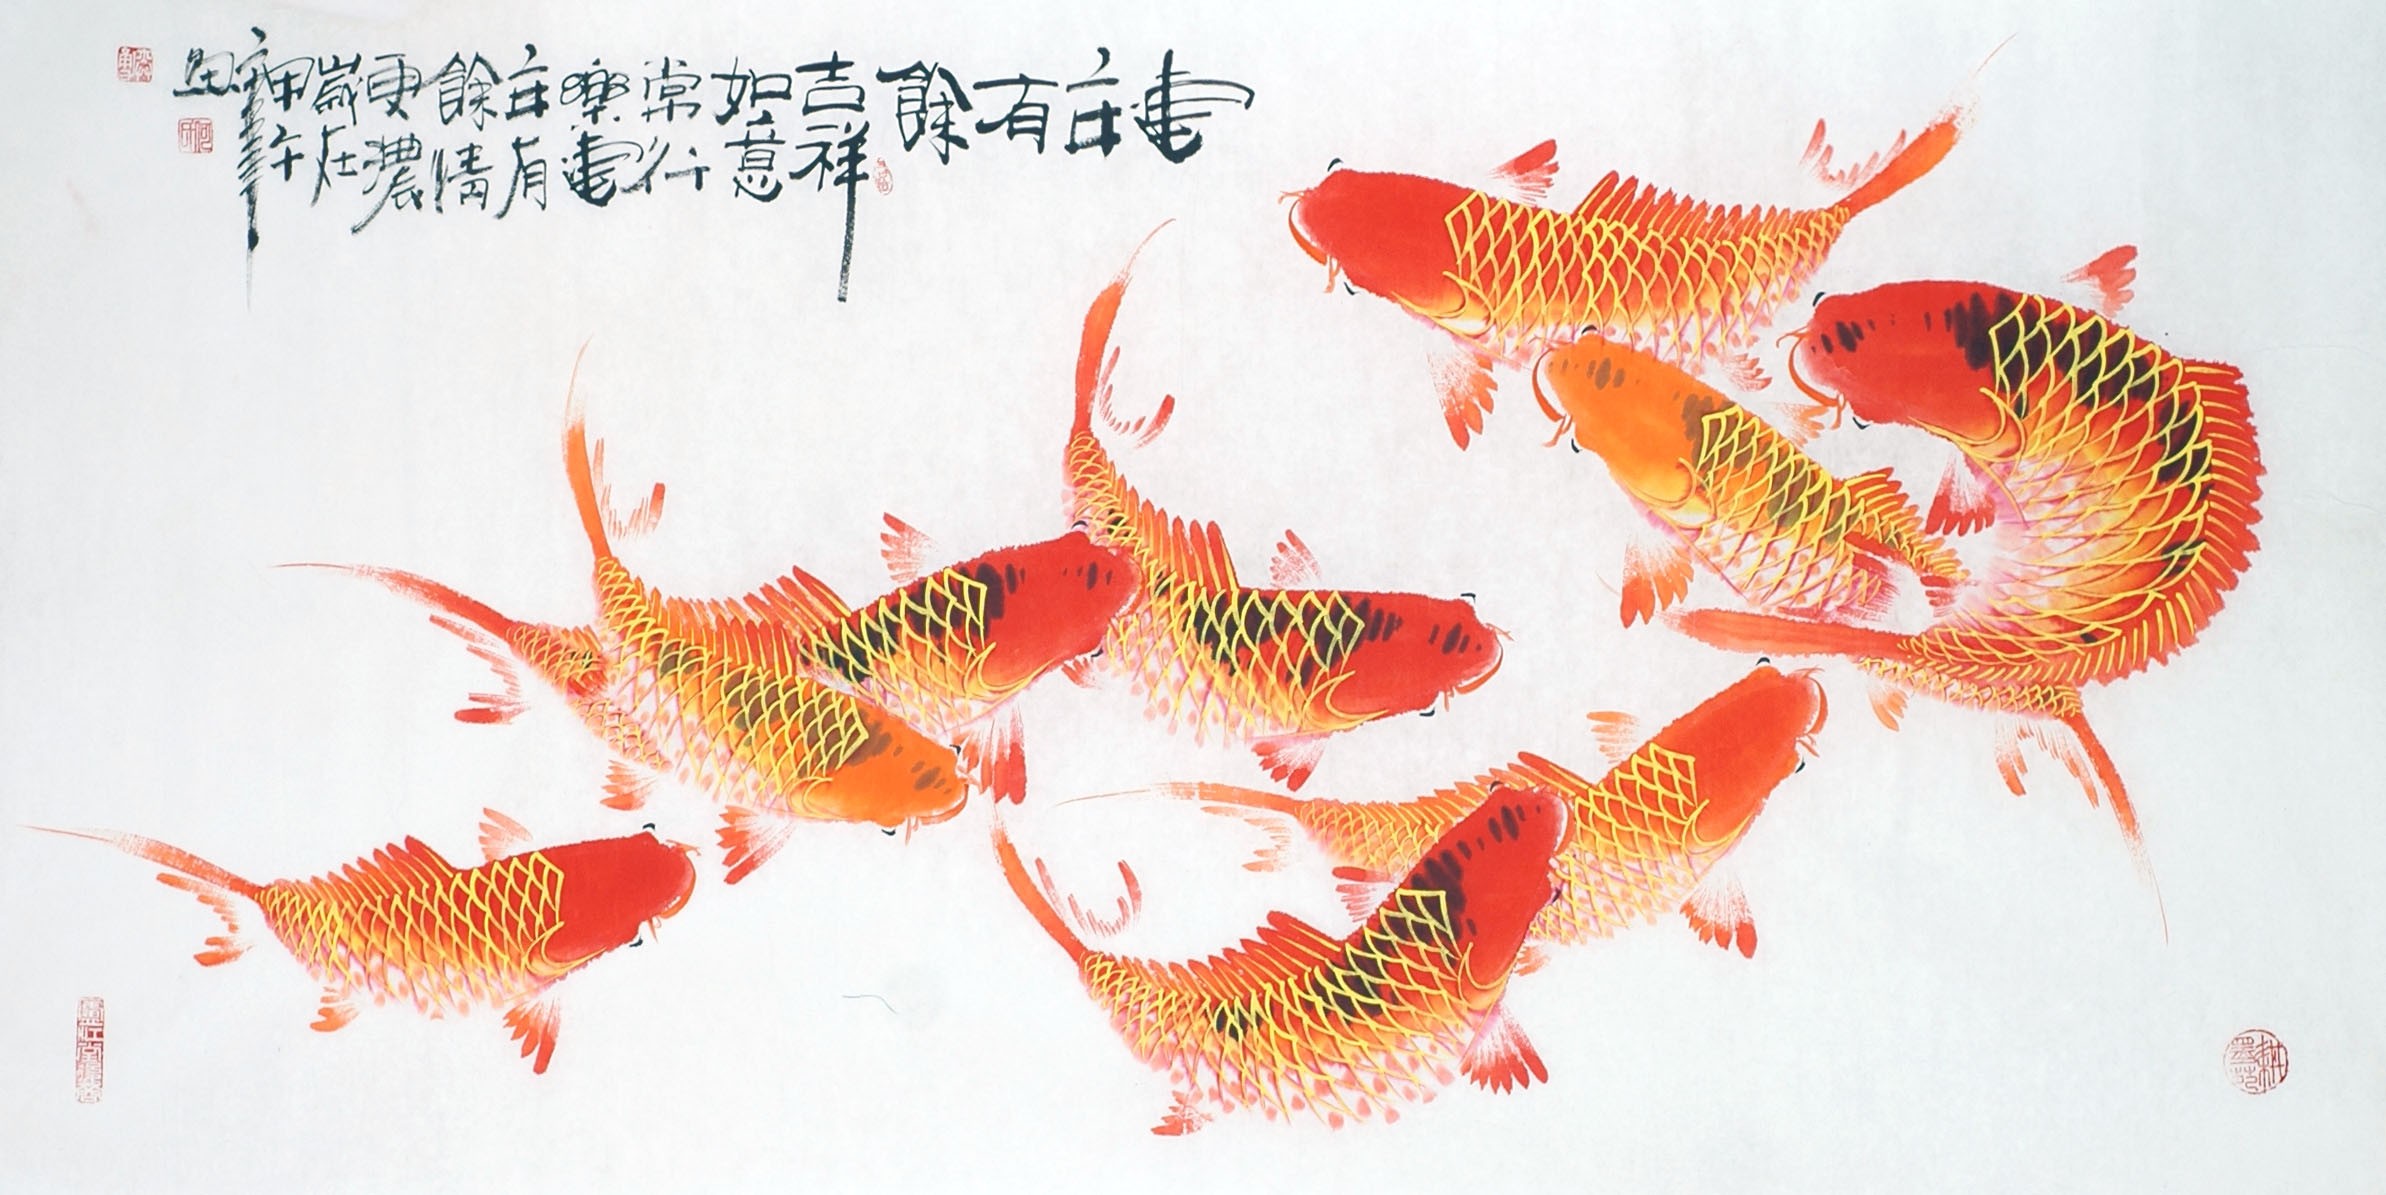 Chinese Fish Painting - CNAG013146